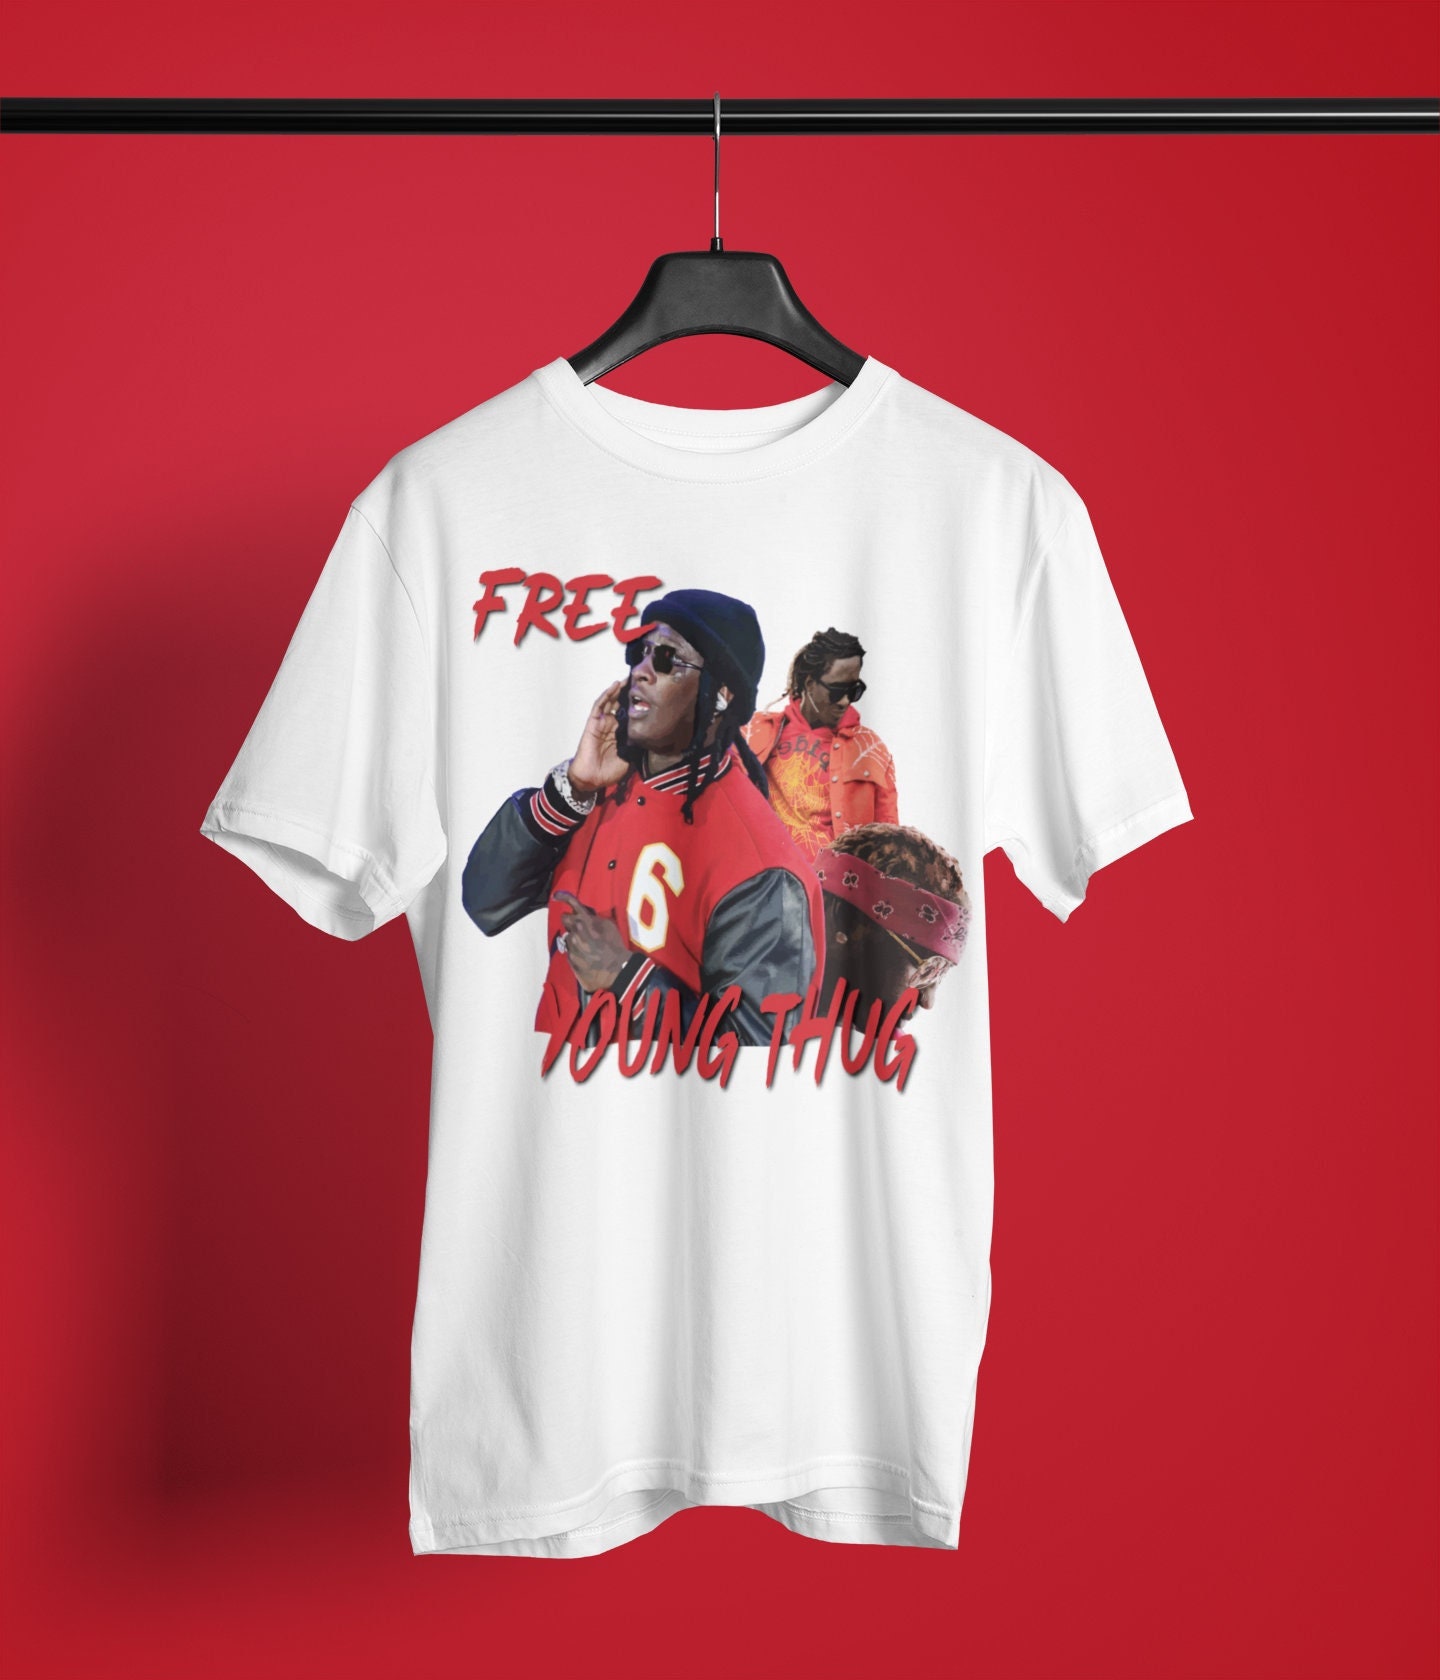 Free Young Thug Shirt | Free Young Thug TShirt